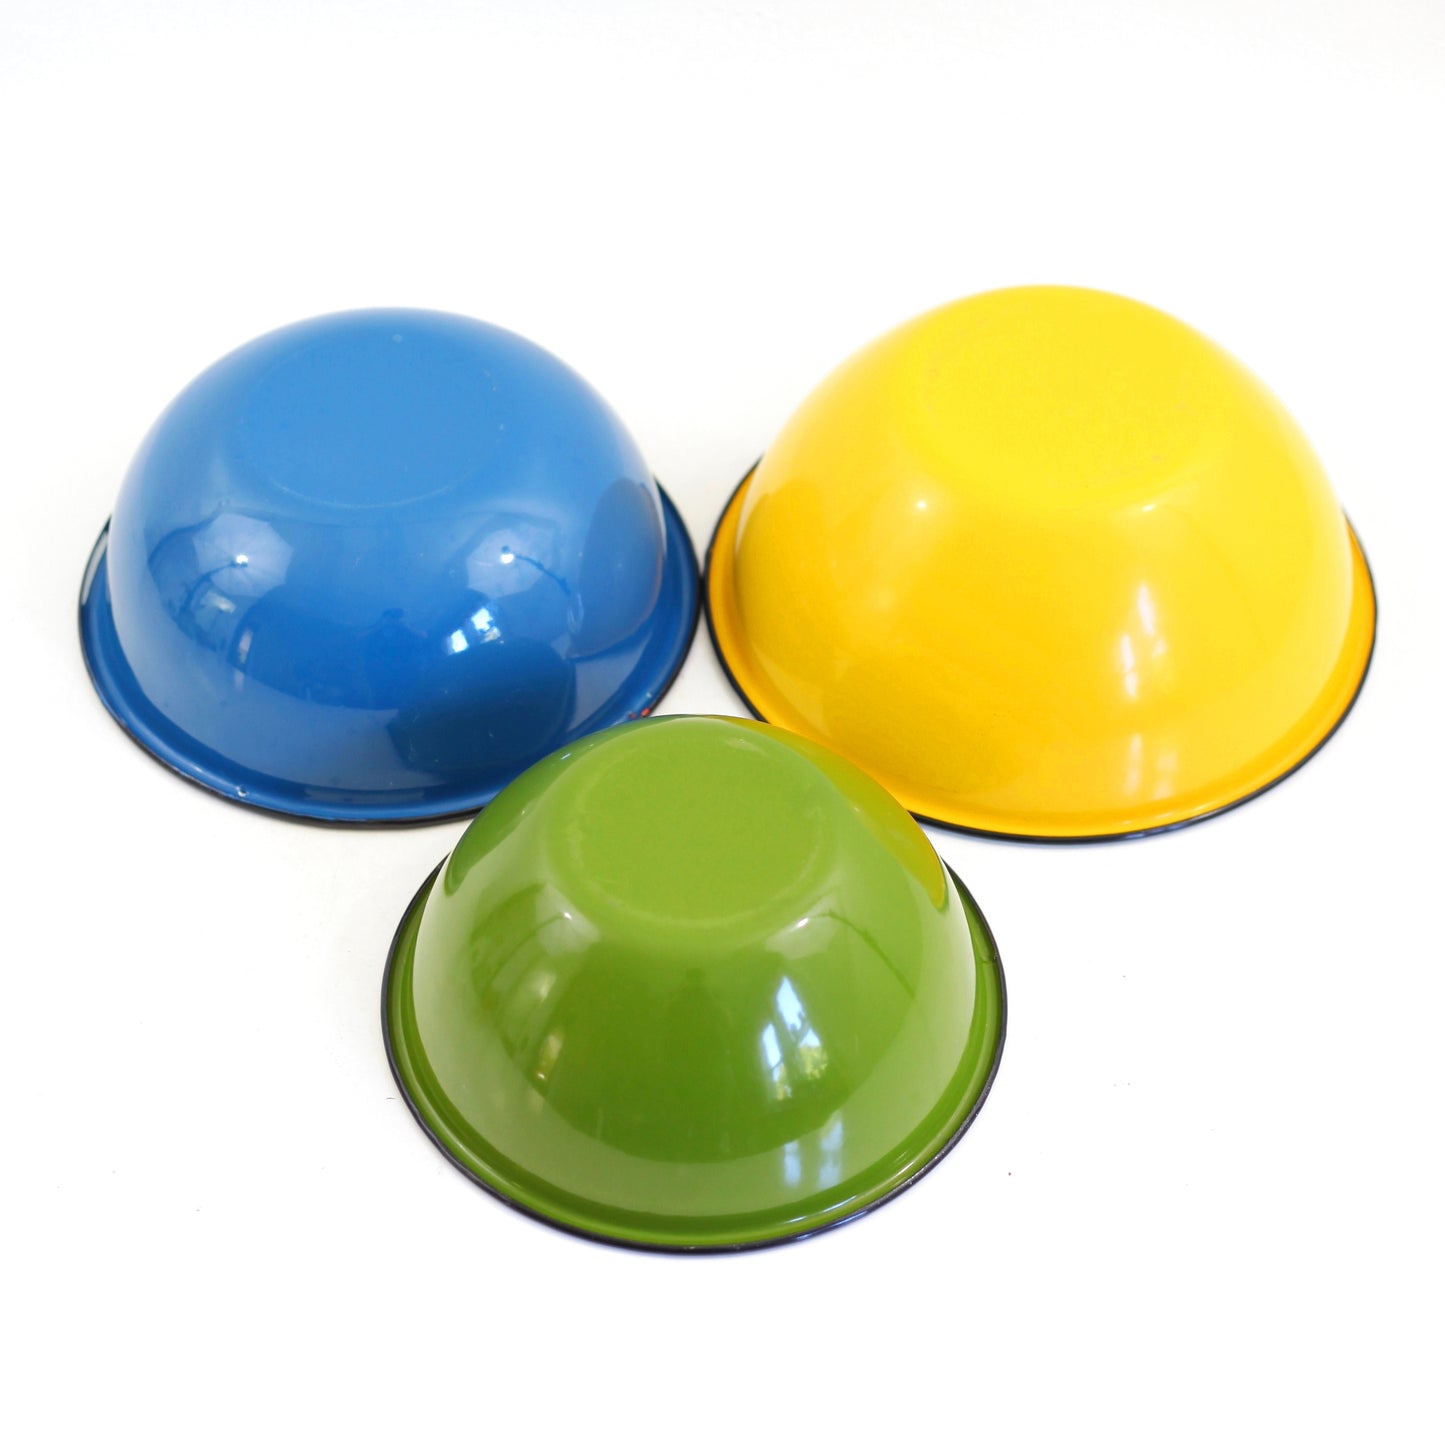 SOLD - Colorful Vintage Enamel Nesting Bowls